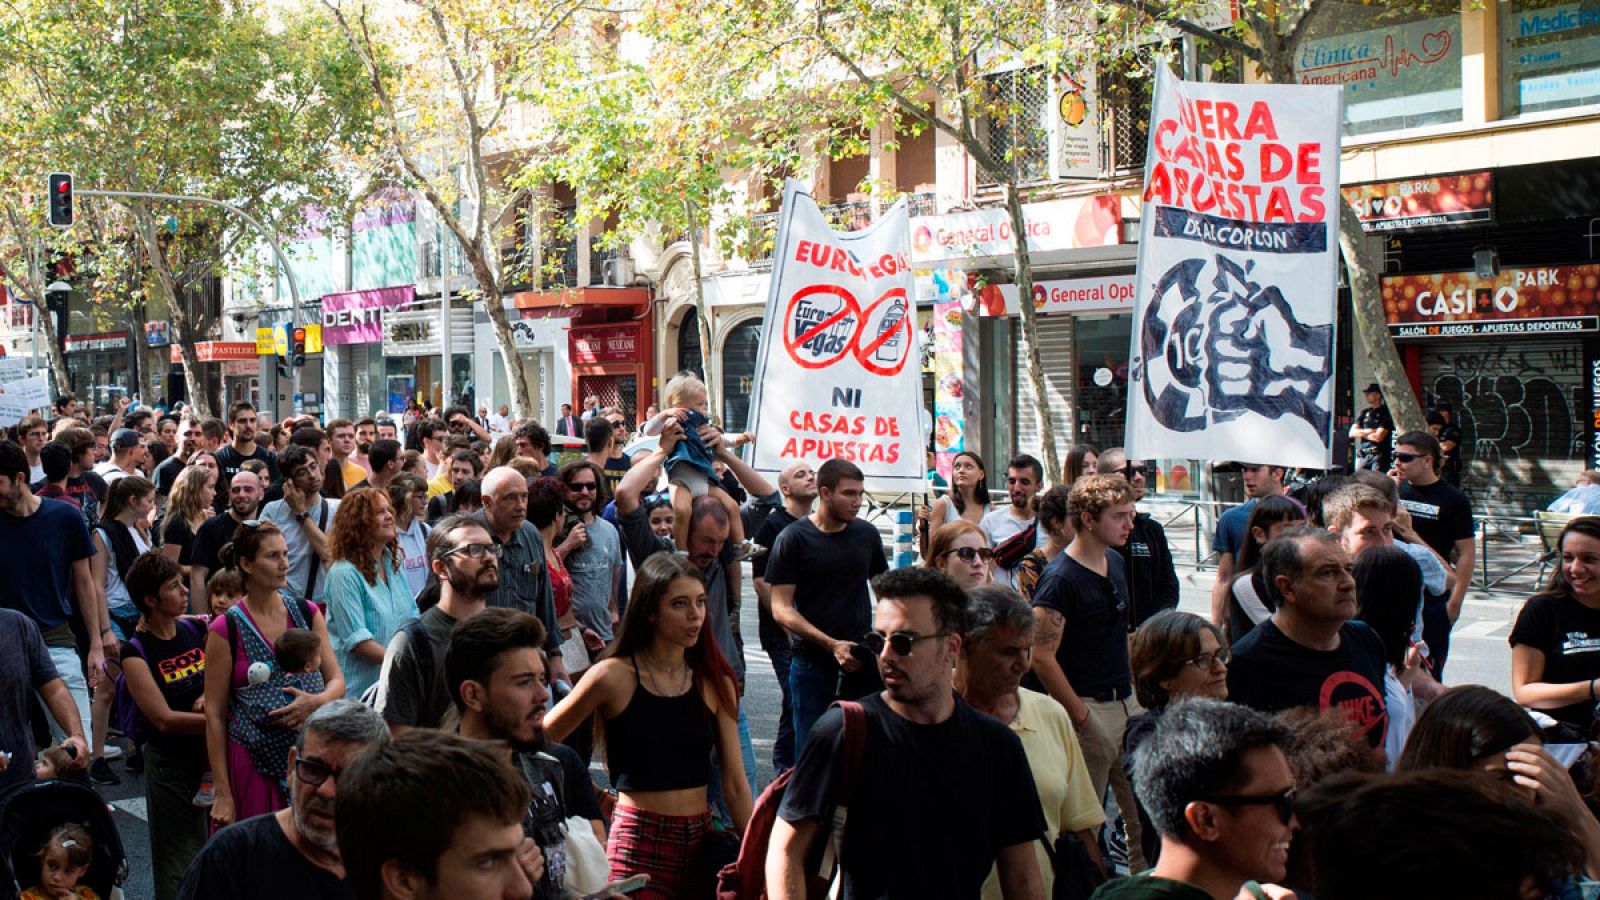 Madrid reclama un ocio "digno" frente a la "plaga" de las casas de apuestas - RTVE.es